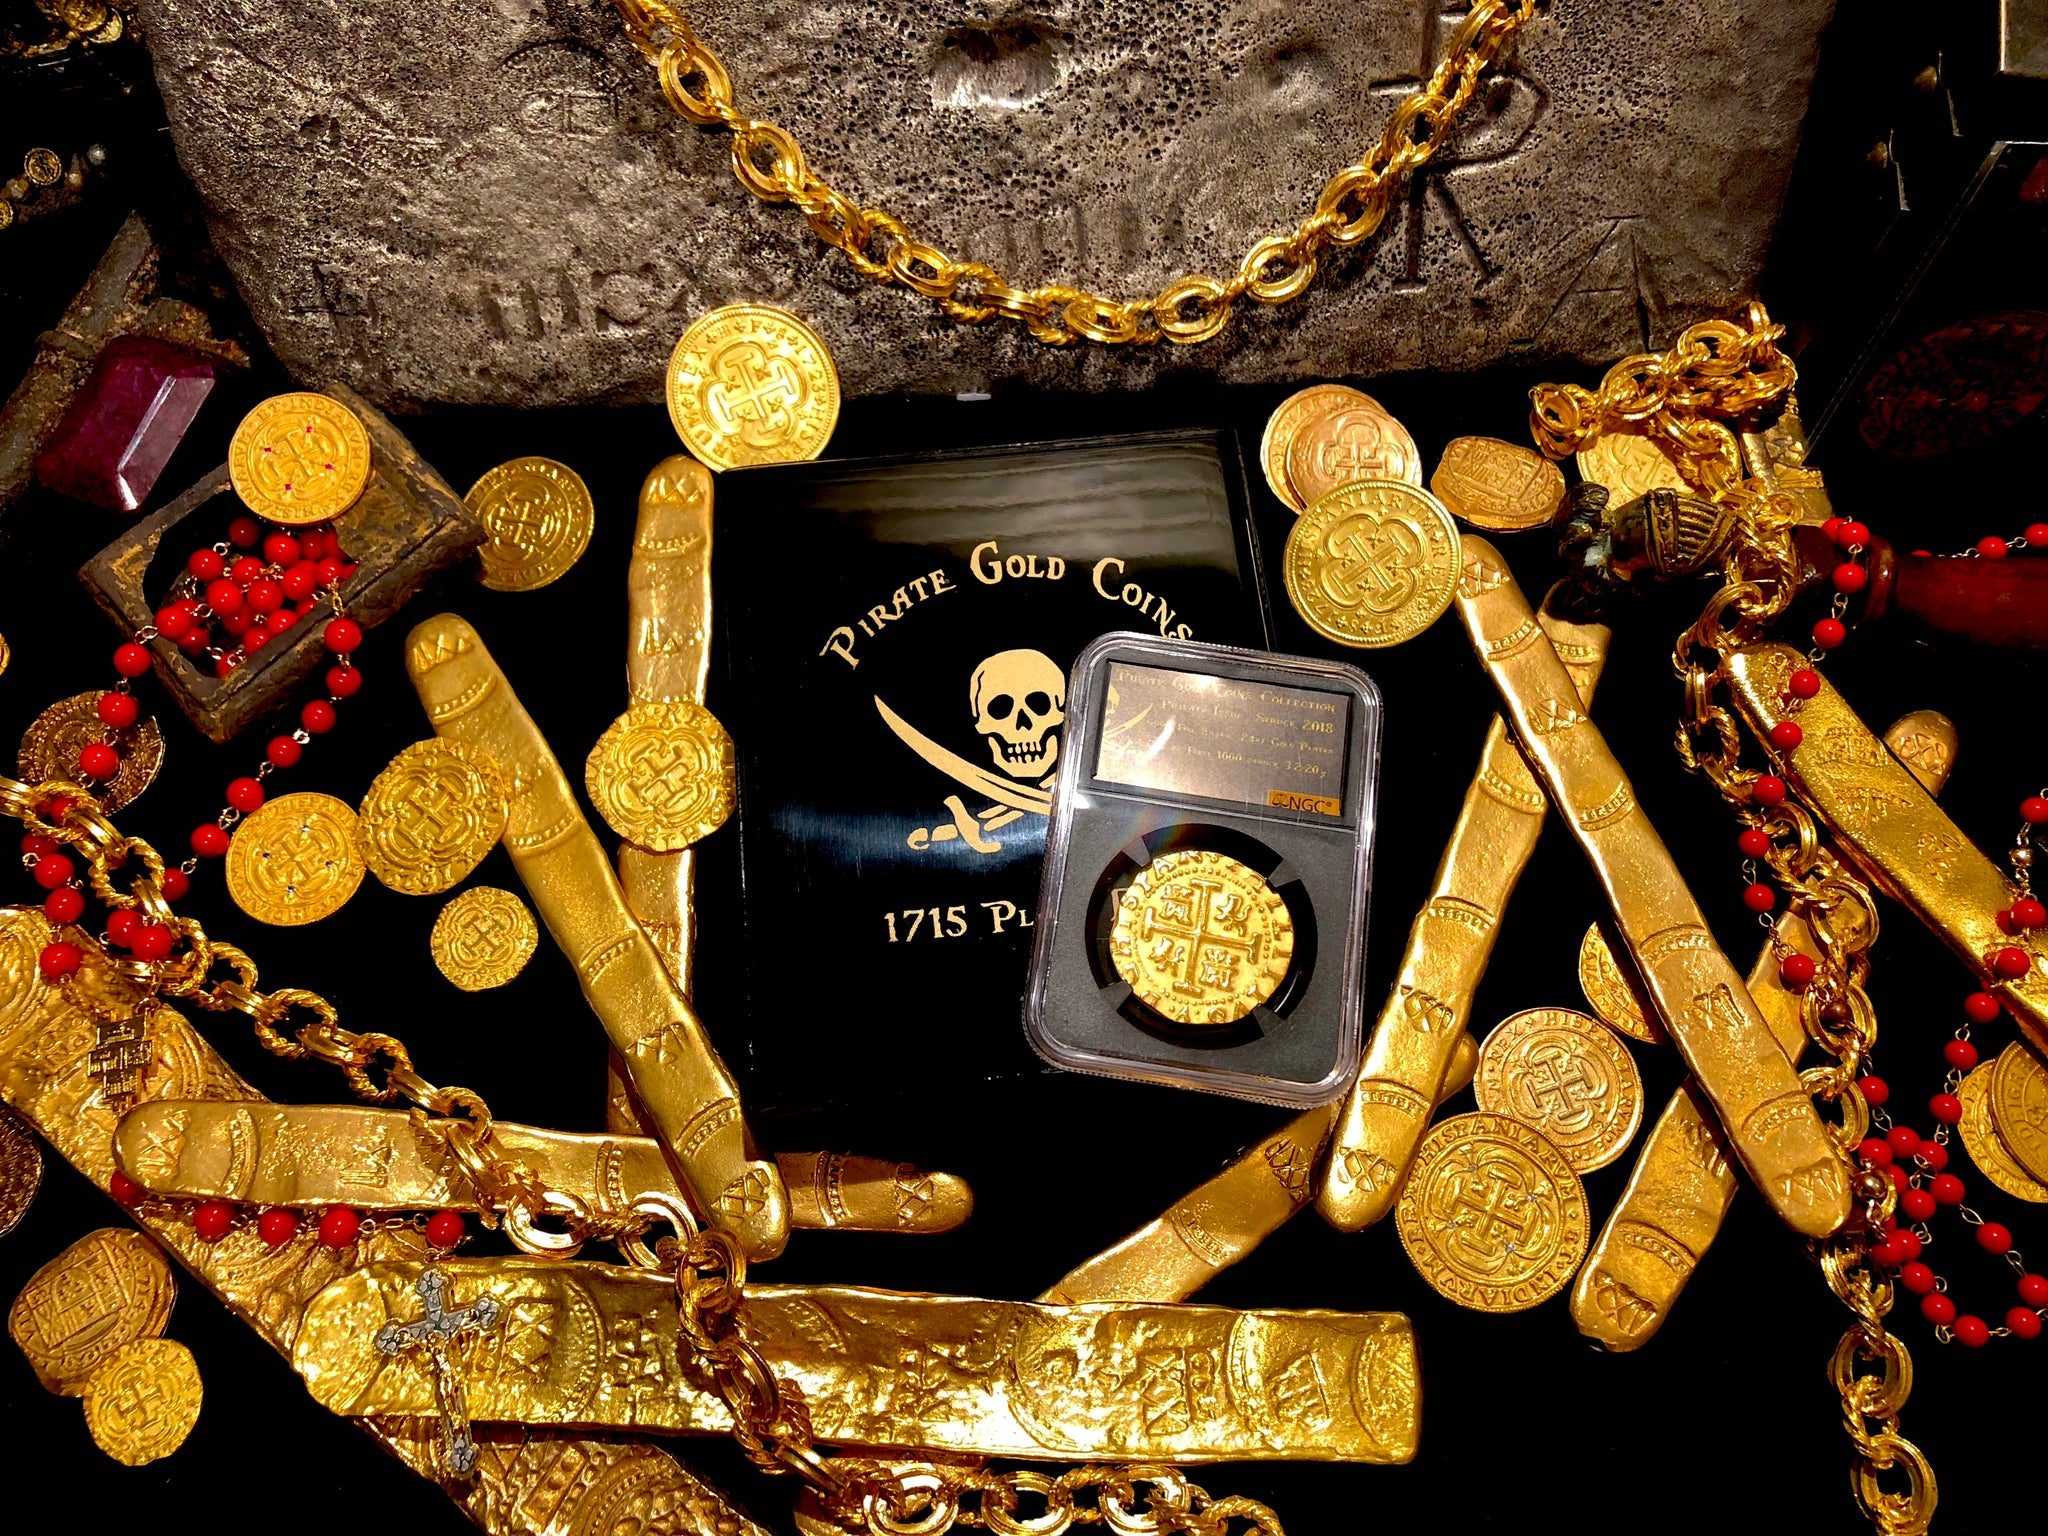 pirate treasure gold